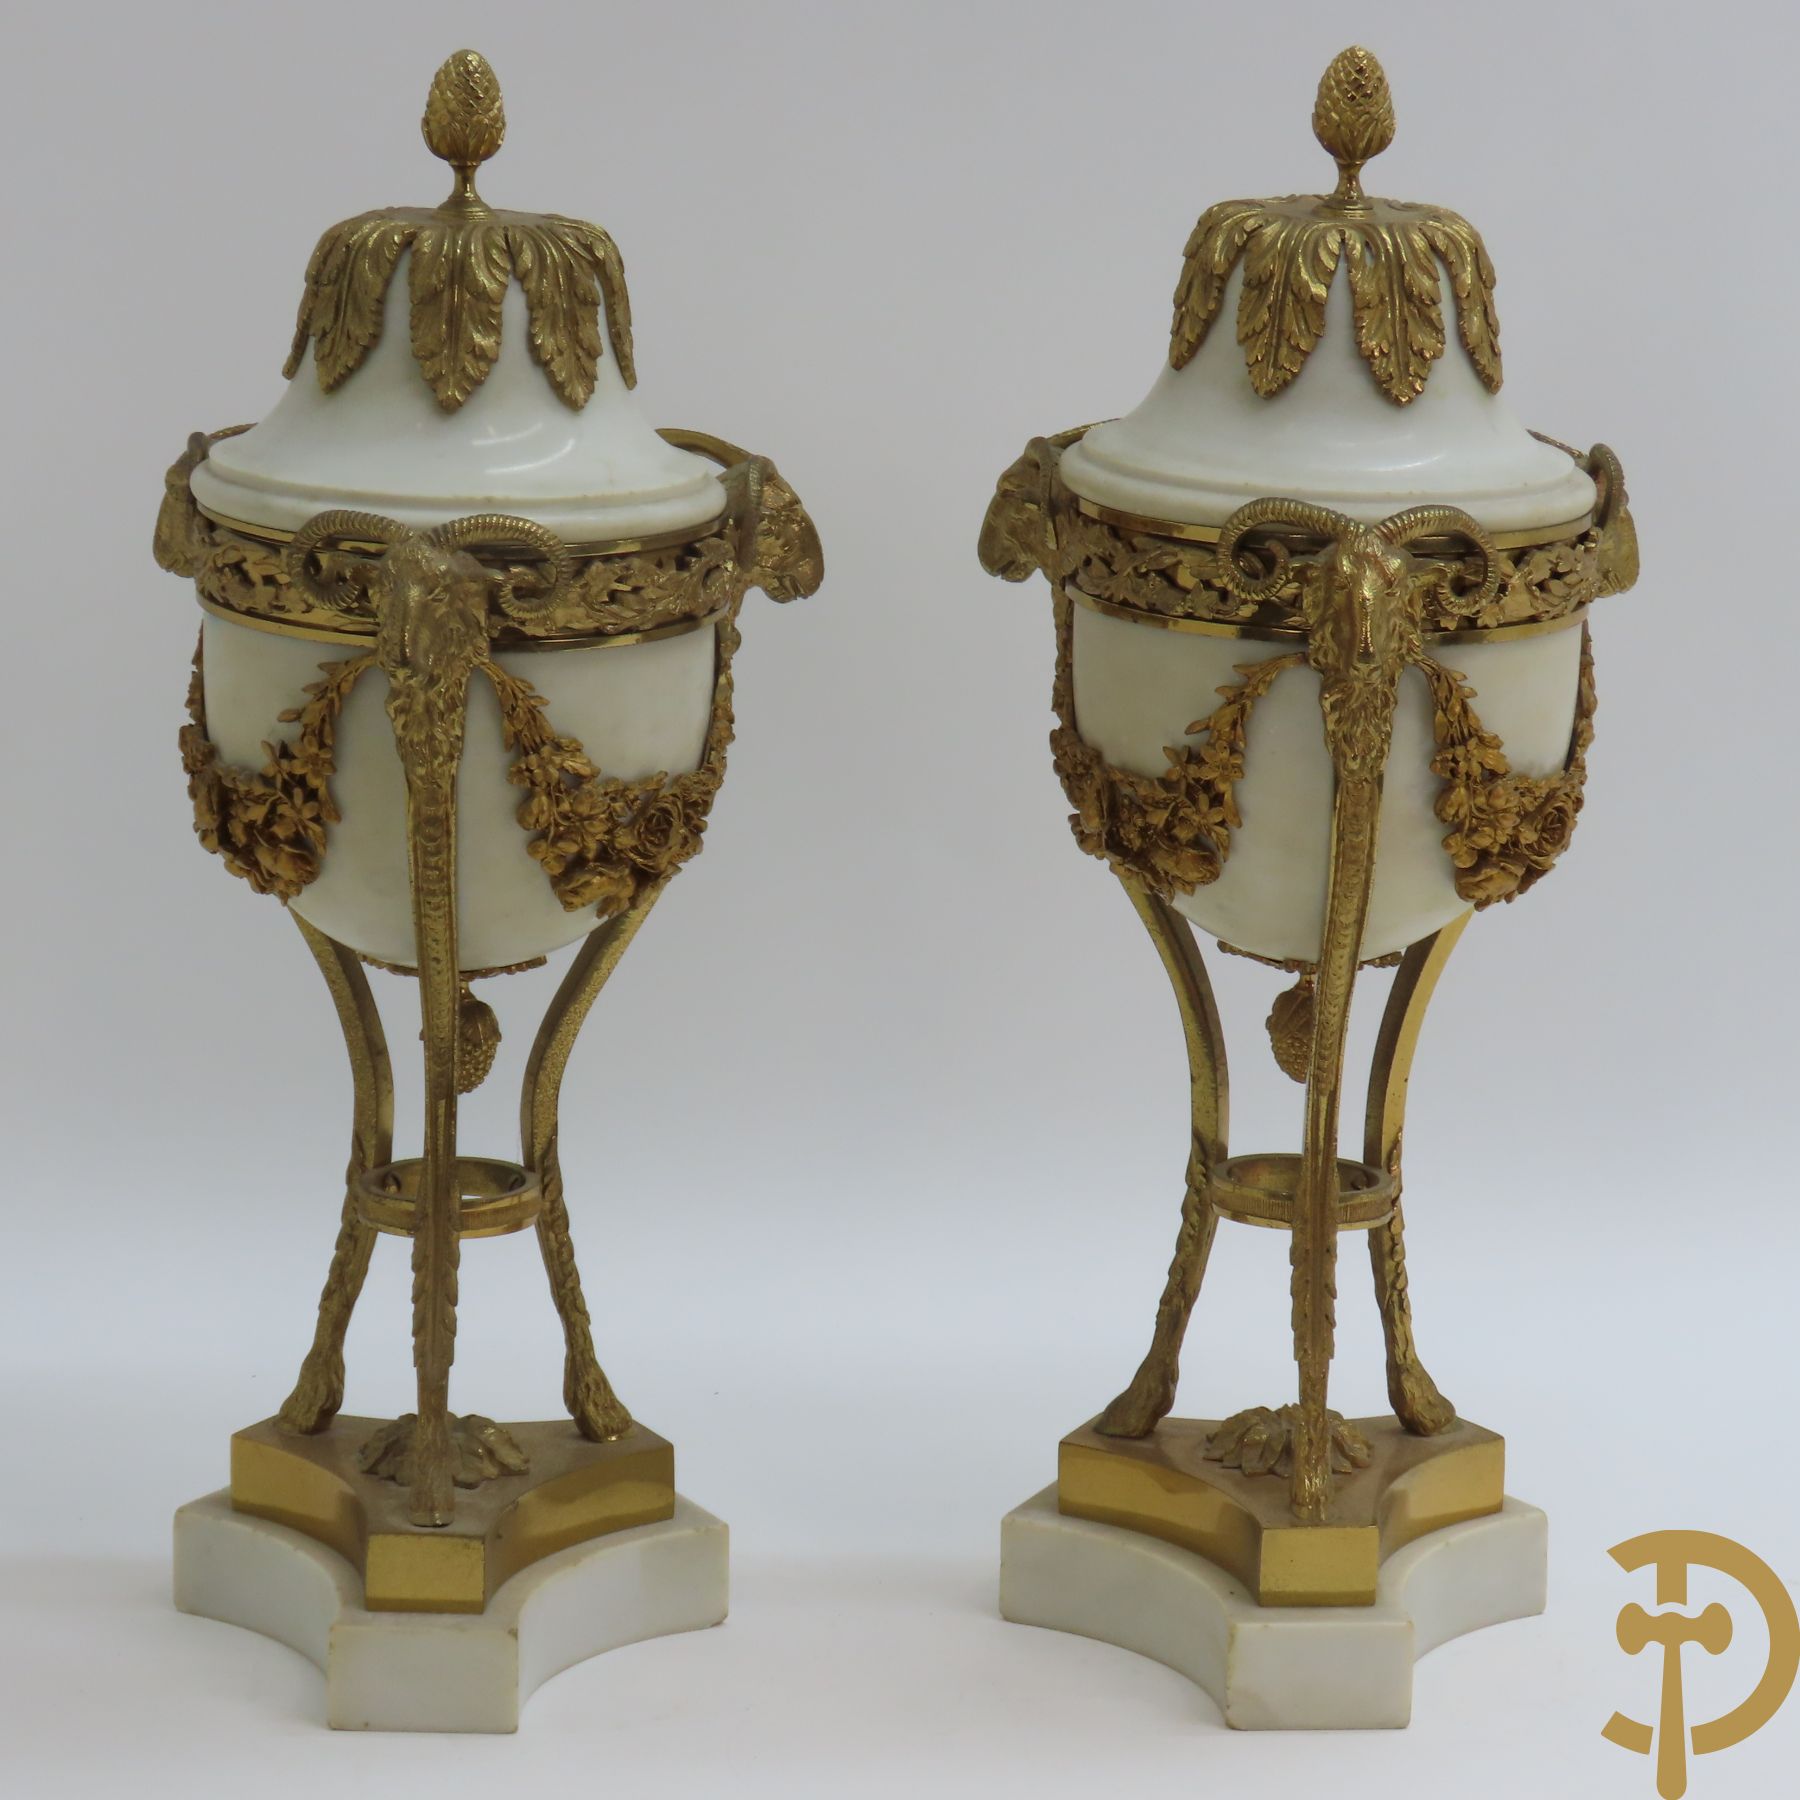 Paar marmeren cassolettes met ramskopen bezet, dragende 3 bloemenguirlandes - bovenaan bezet met denappel